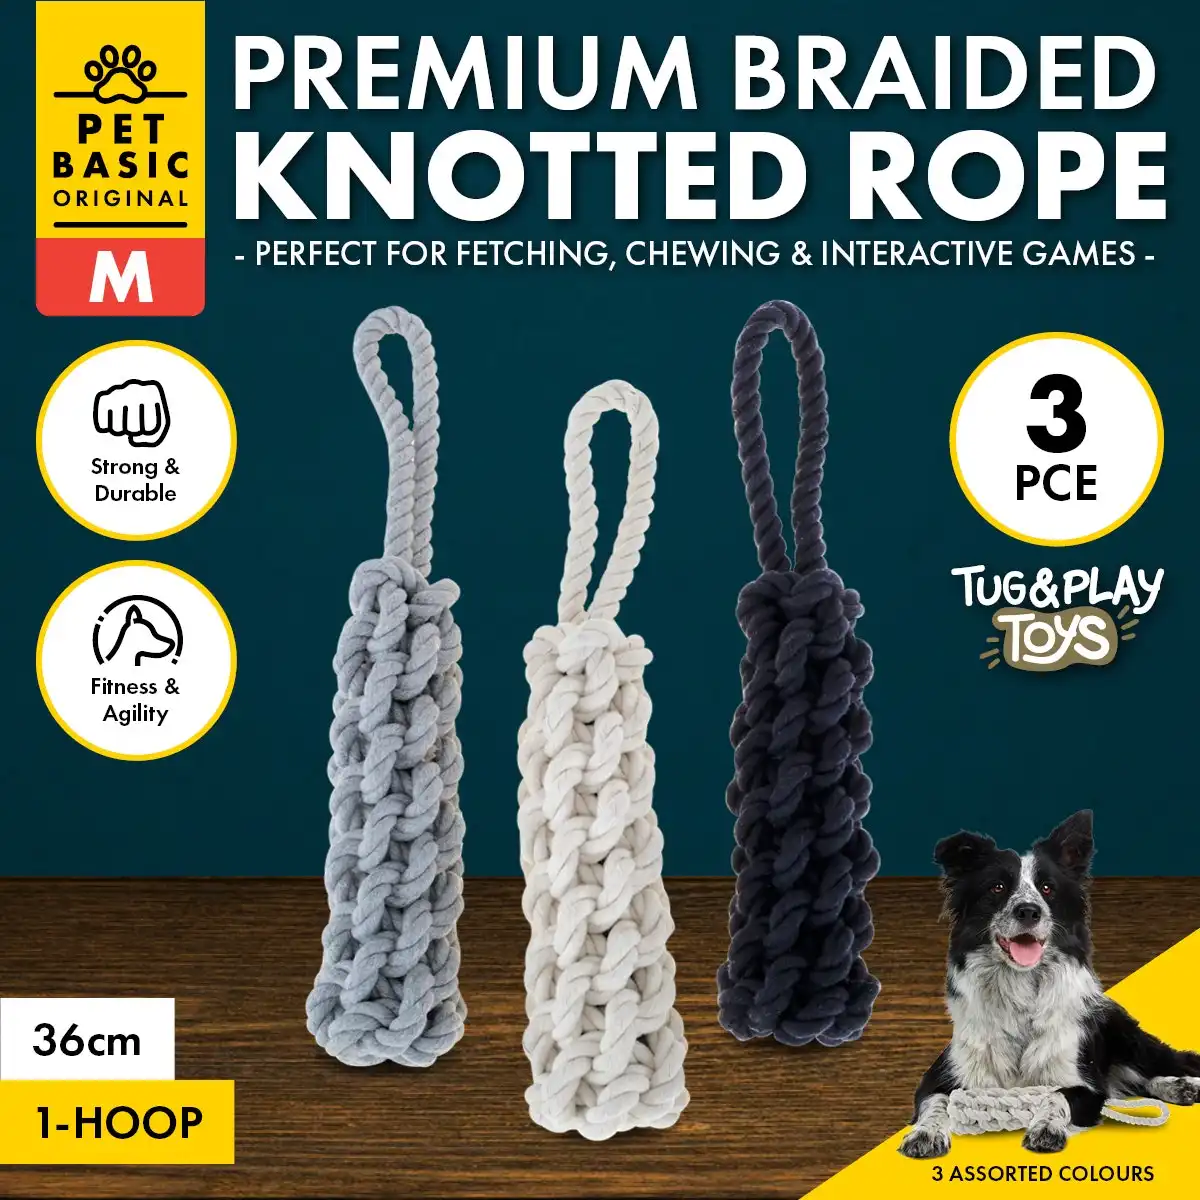 Pet Basic® 3PCE Premium Braided Knotted Rope Medium Natural Fibres 36cm